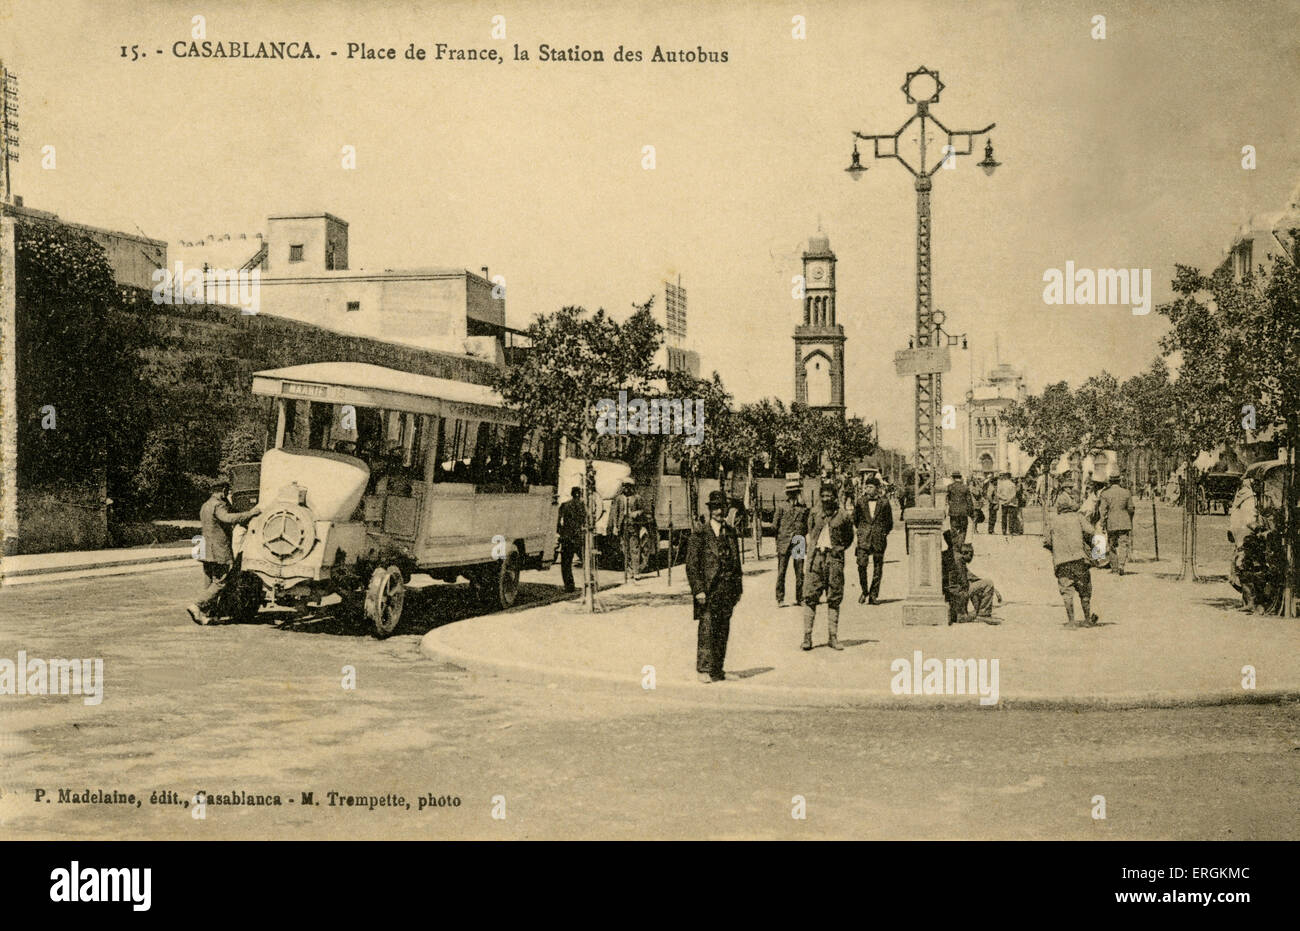 Busbahnhof am Place de France, in Casablanca, Marokko. Foto von P. Madelaine. Stockfoto